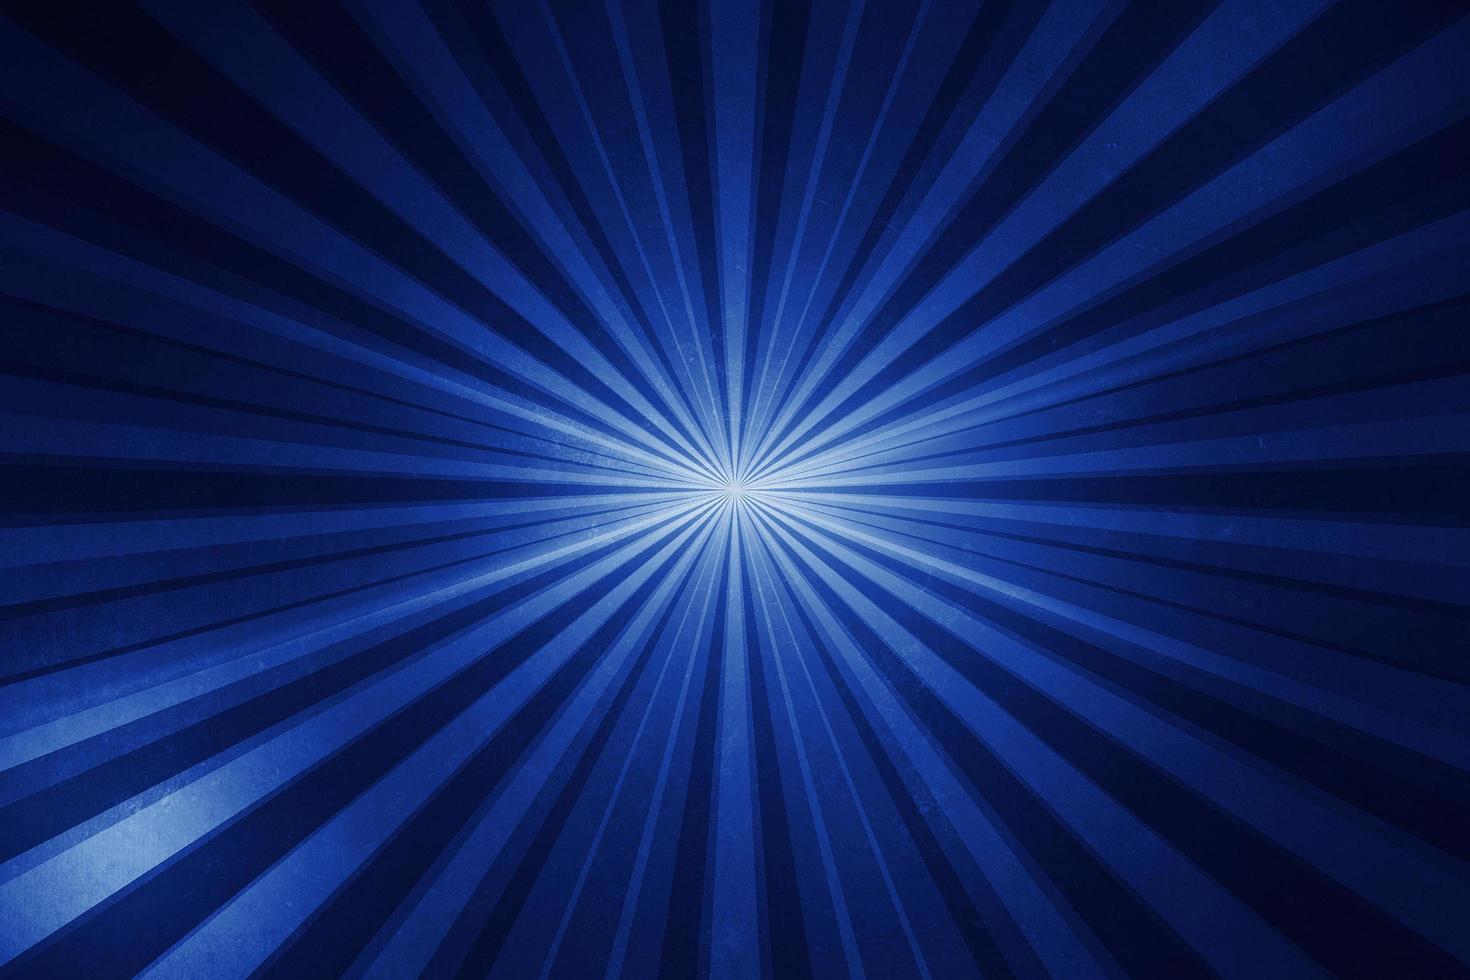 Blaulichtsonne platzen und Sterne mit abstraktem Hintergrundgrafikdesign mit Farbverlauf mit Streifen foto